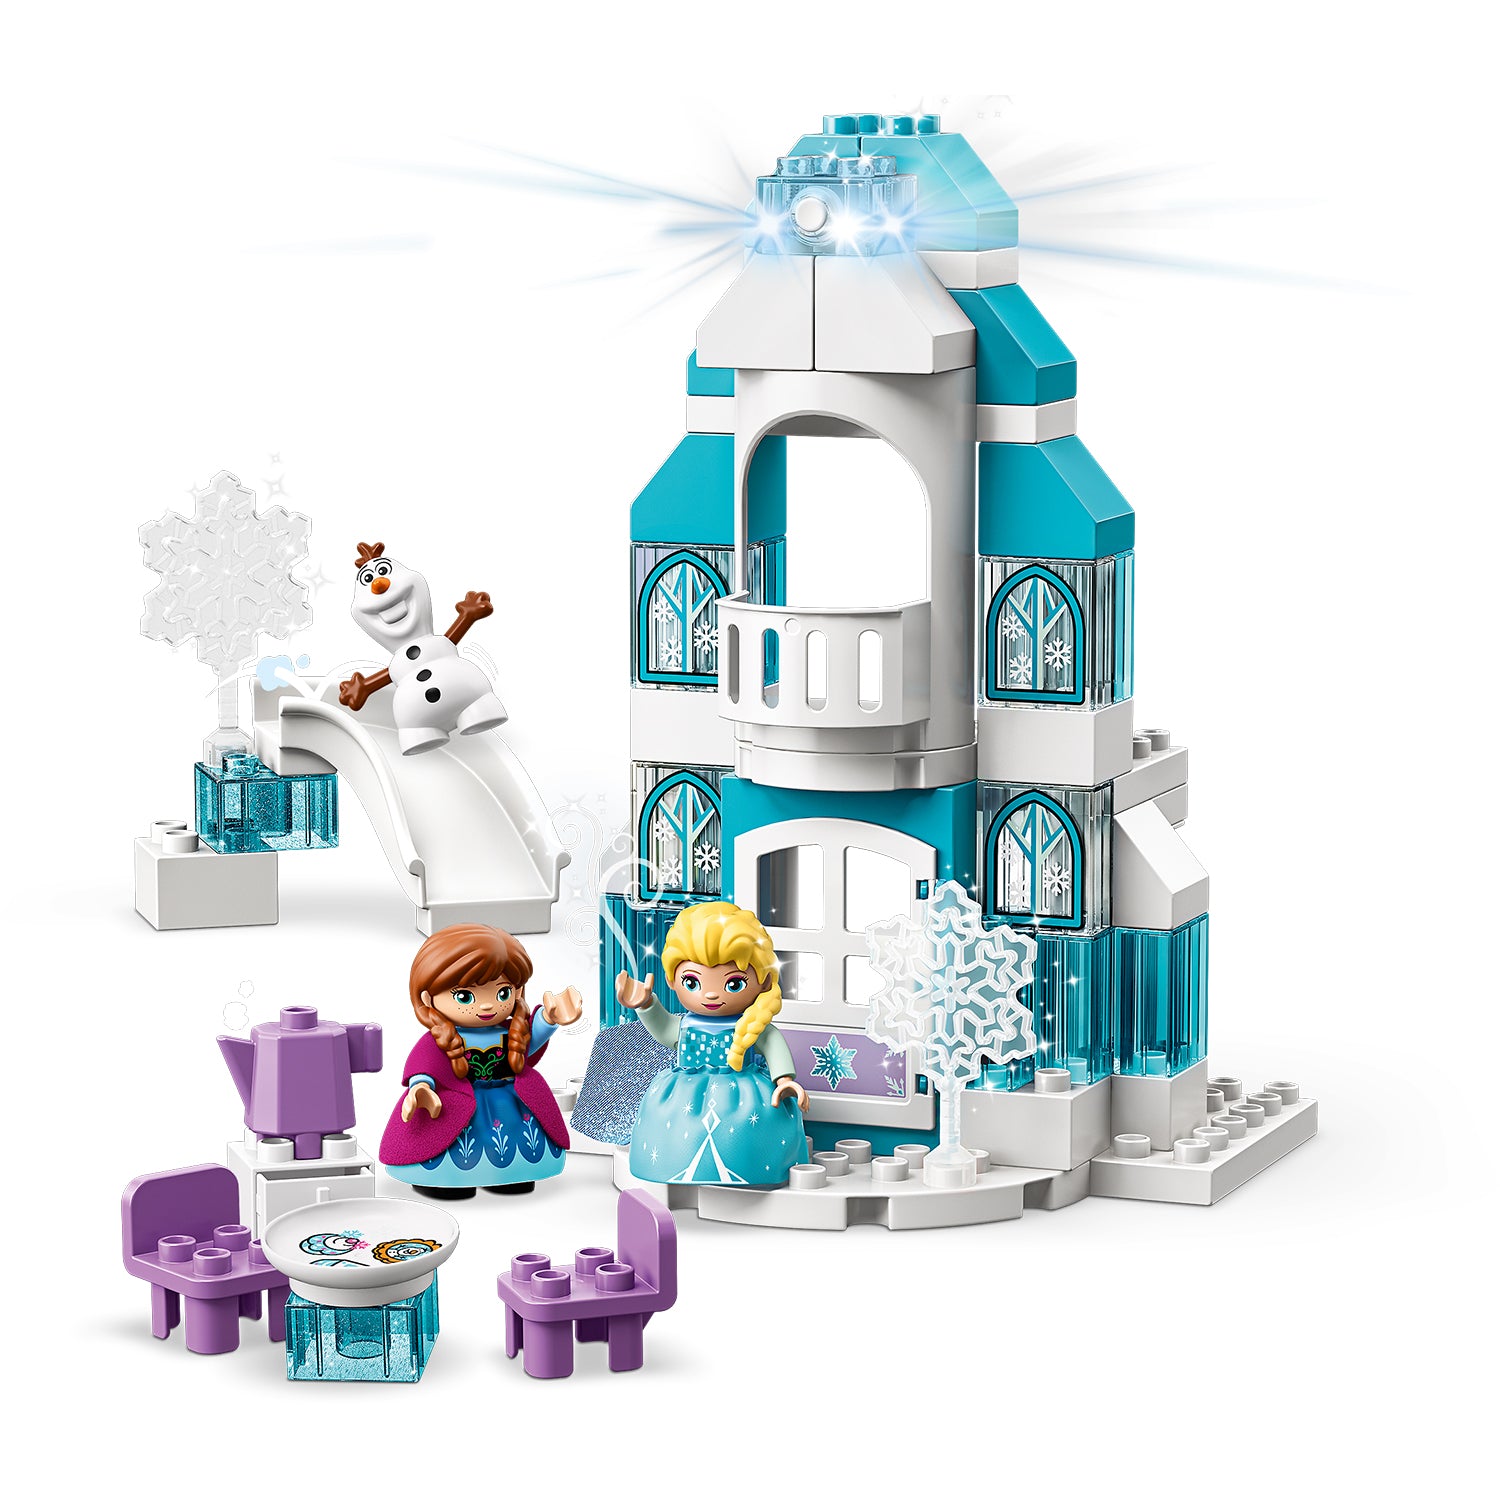 LEGO® DUPLO Disney Frozen Ice Castle Set 10899 Default Title